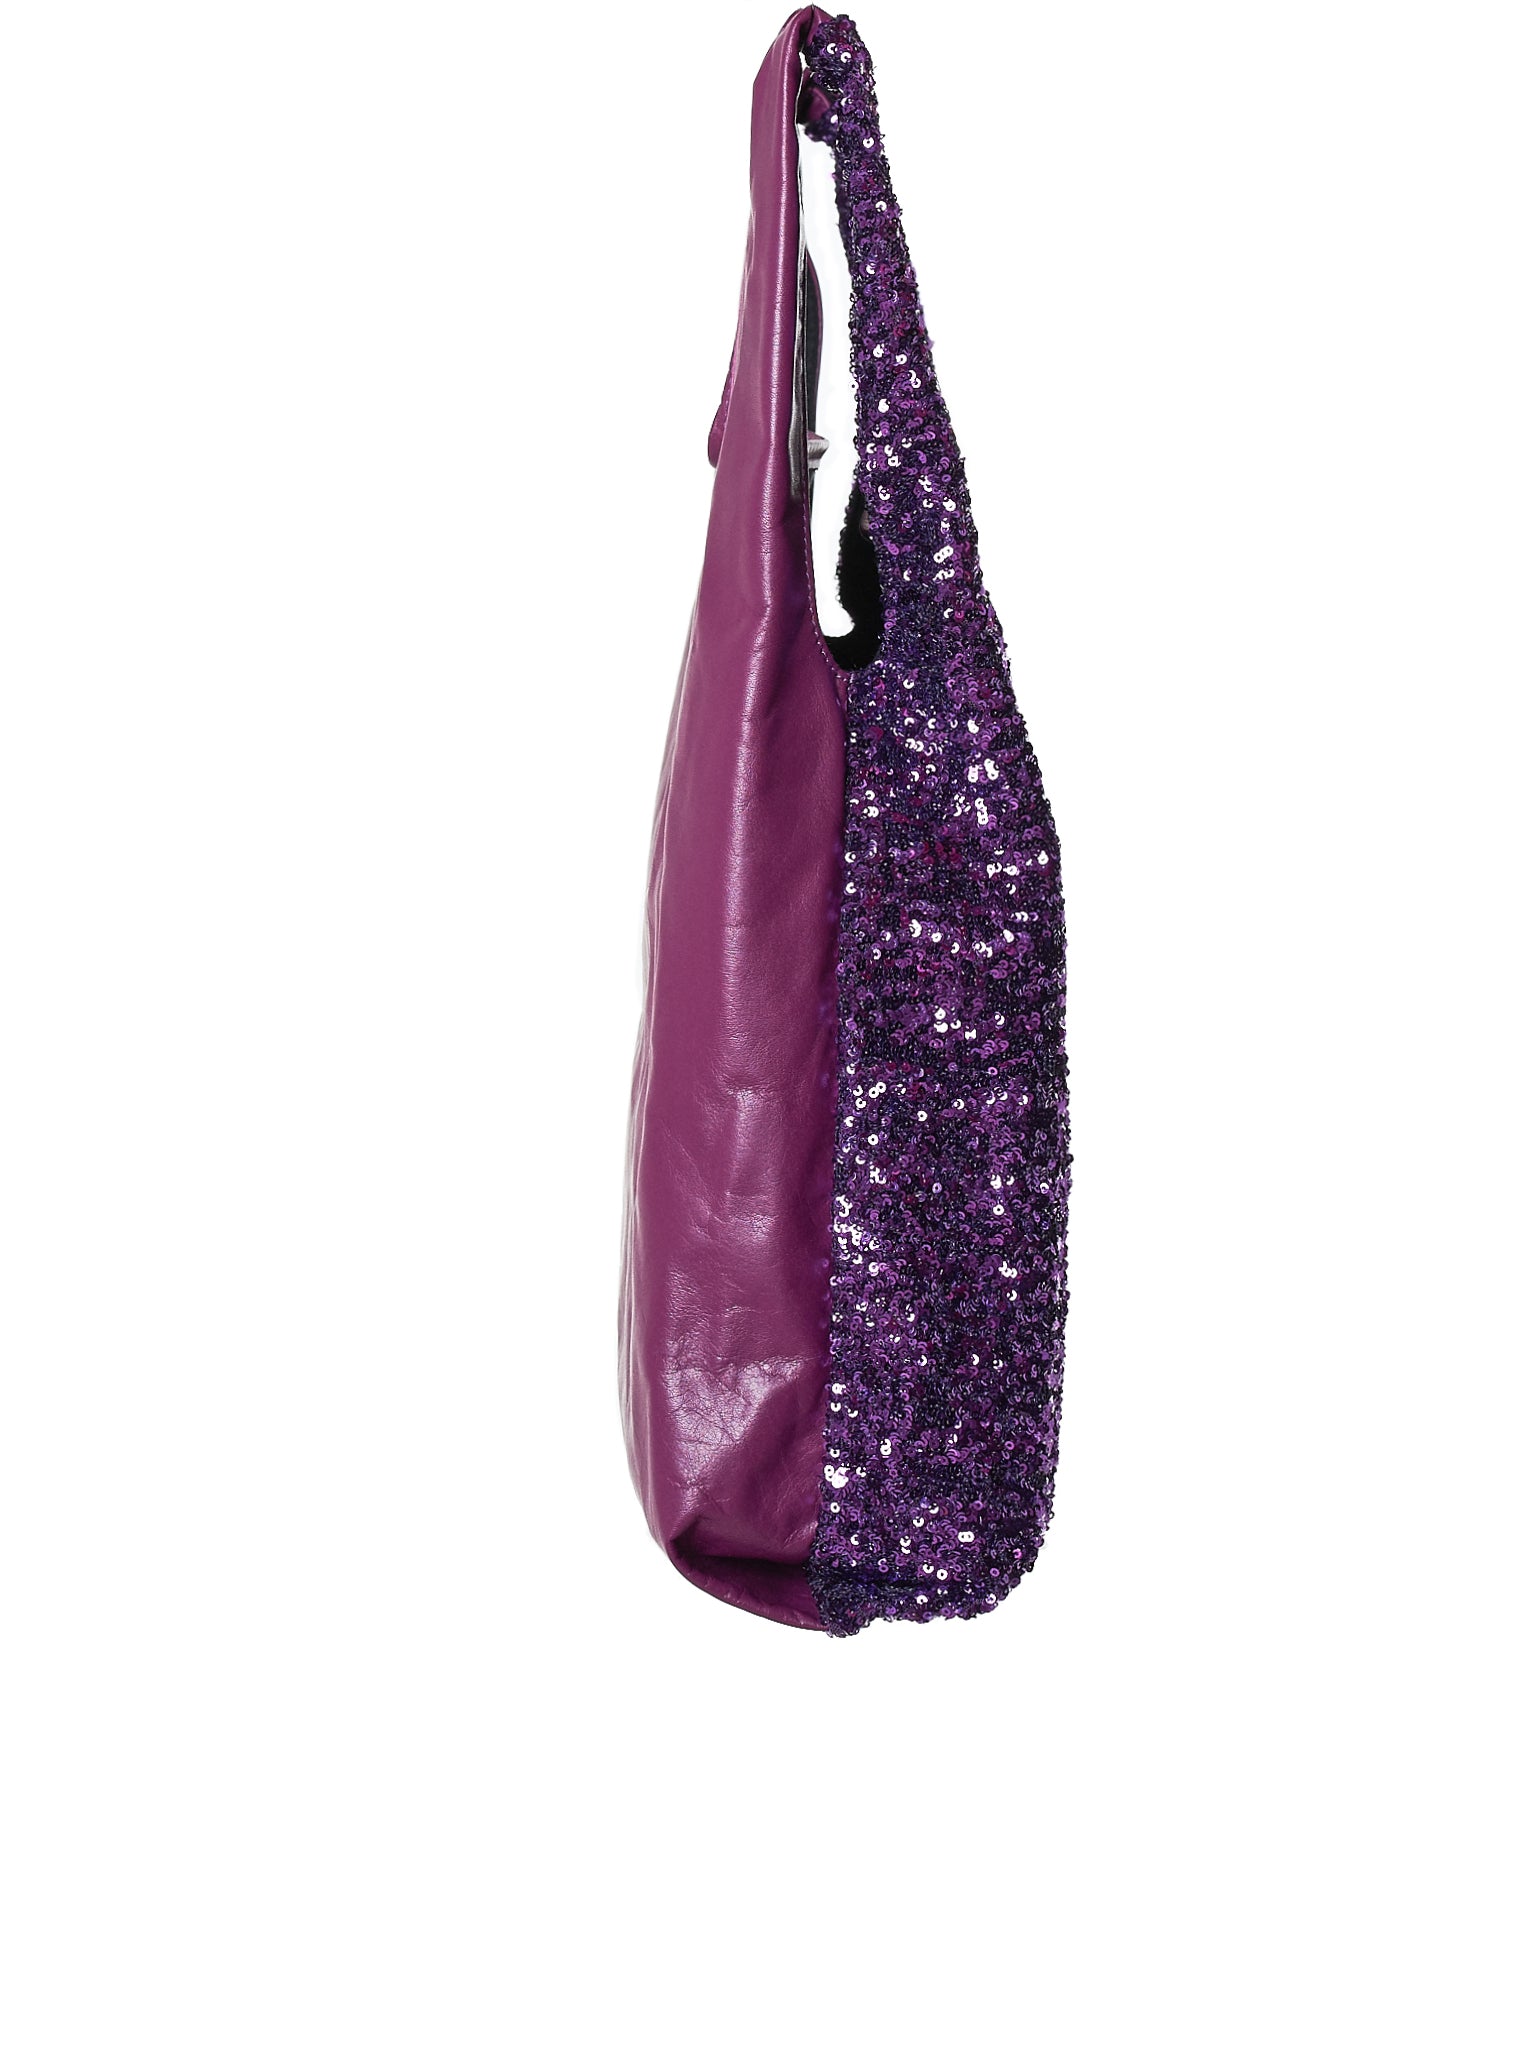 Sequined Tote Bag (JB-201-051-3-PURPLE)